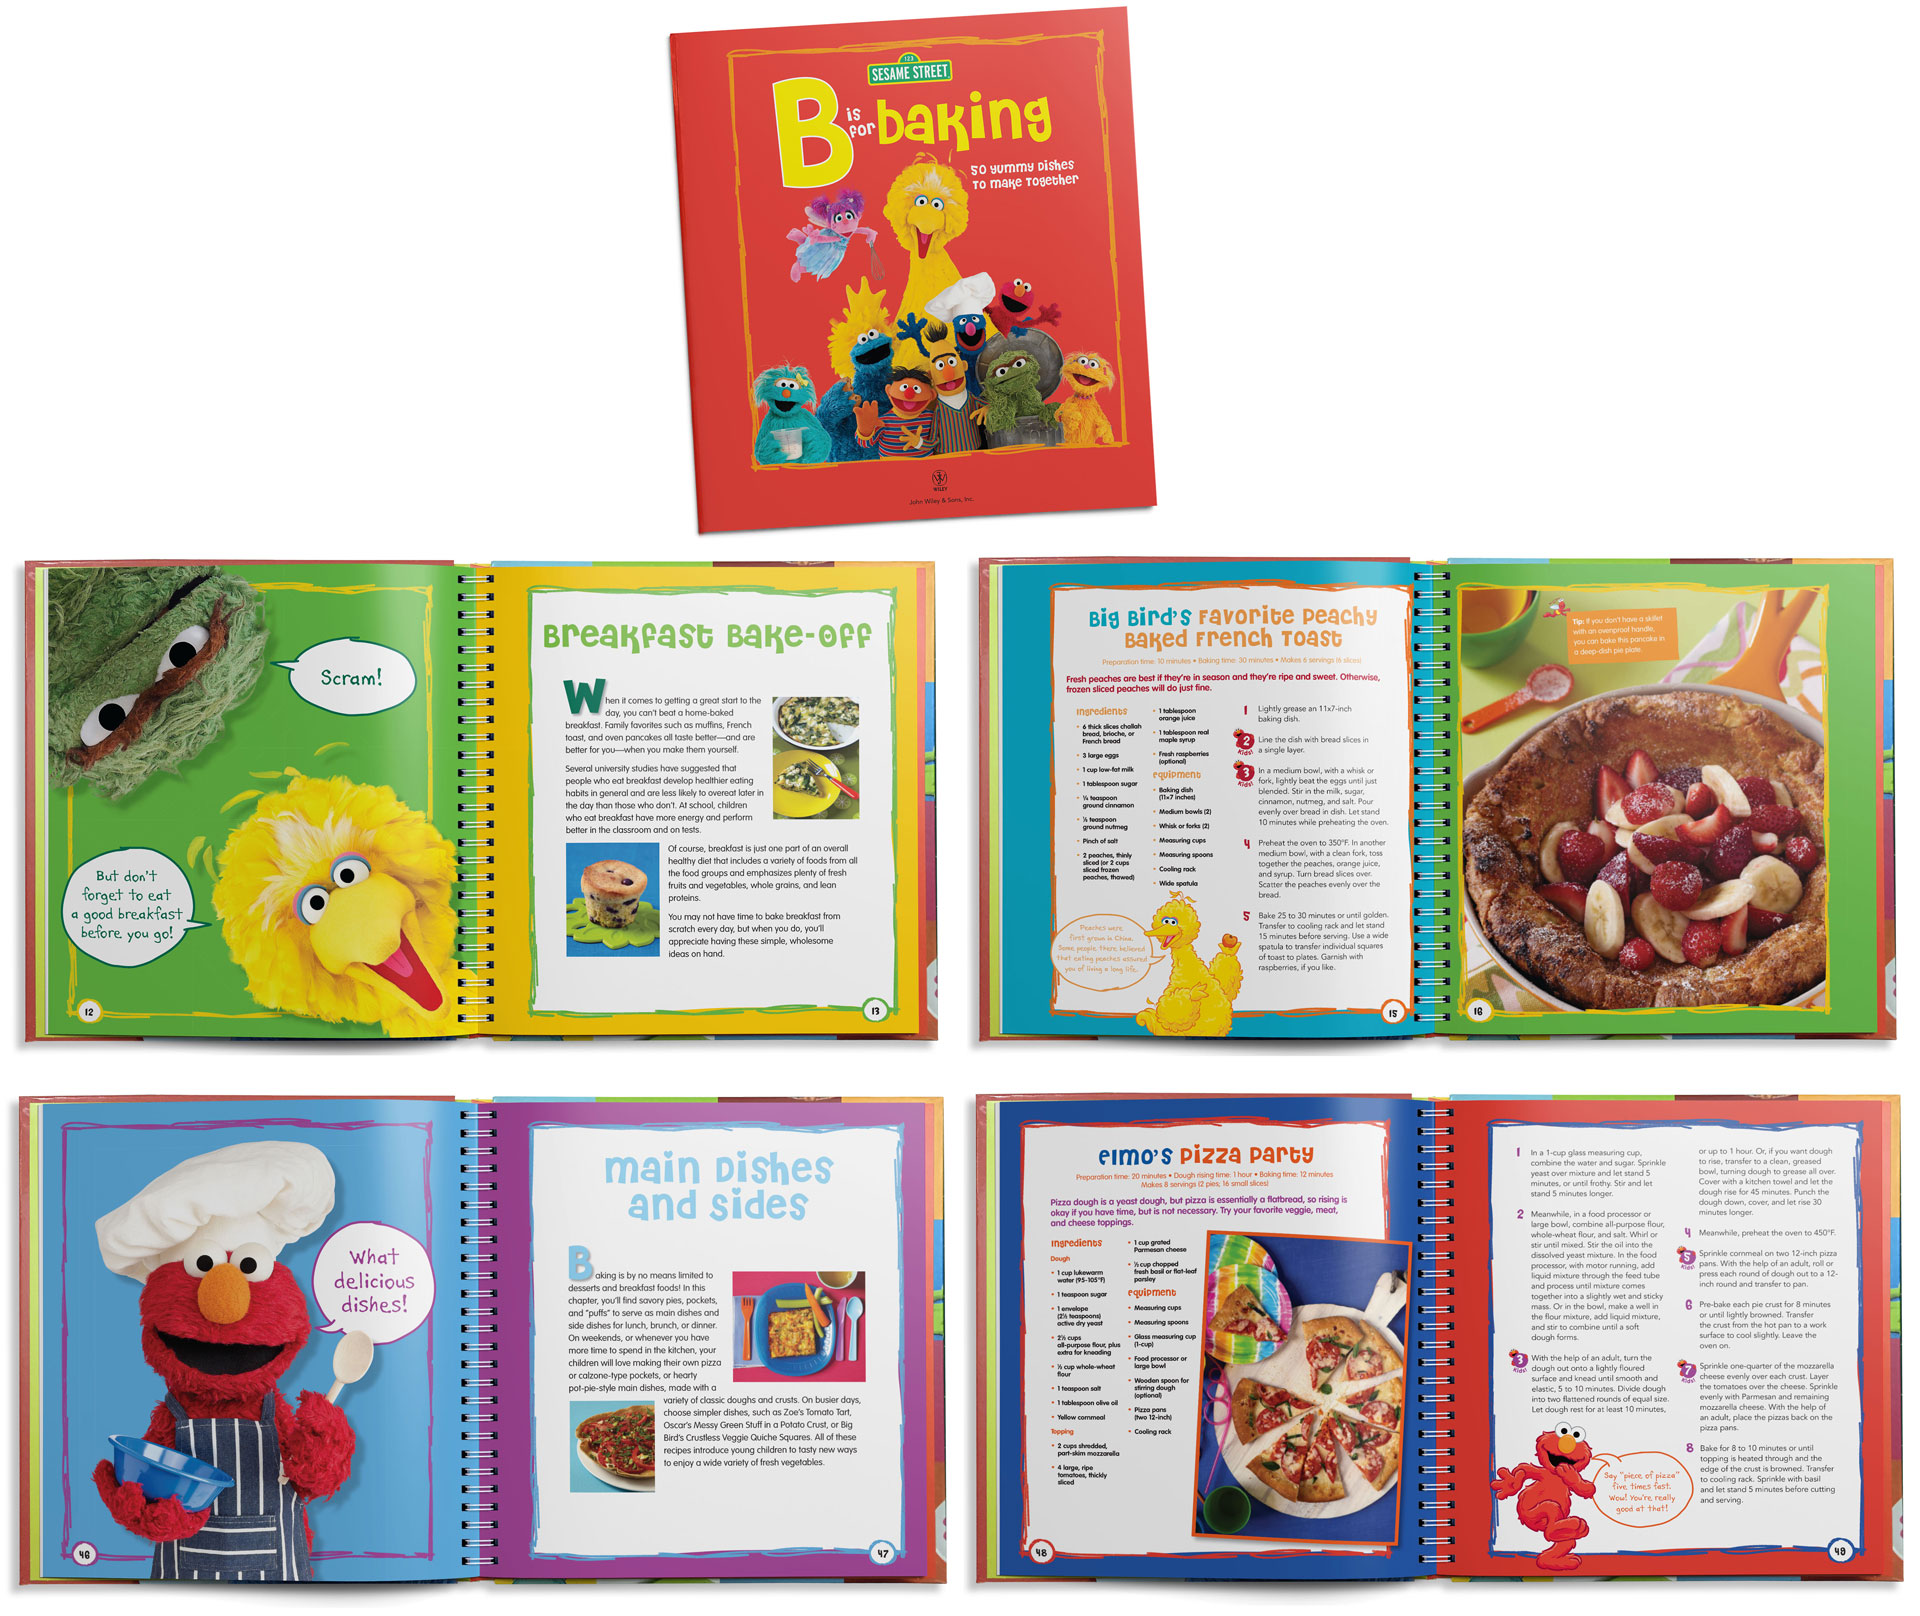 Sesame Street "B is for Baking" cookbook